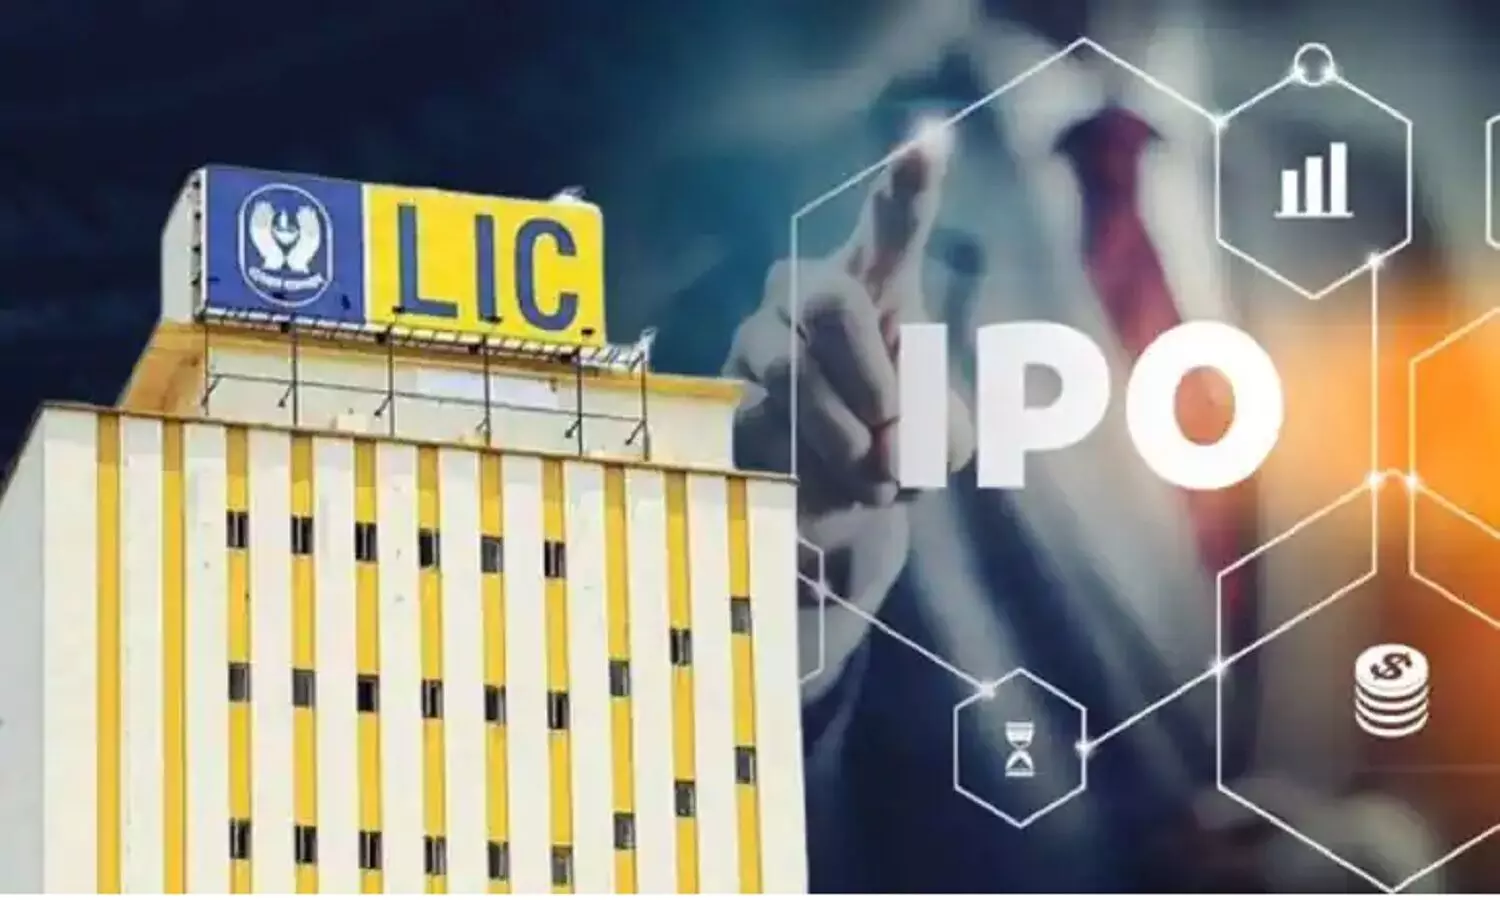 LIC IPO Listing: एलआईसी के शेयरों की लिस्टिंग पर शेयर बाजार के एक्सपर्ट का नजरिया जानें